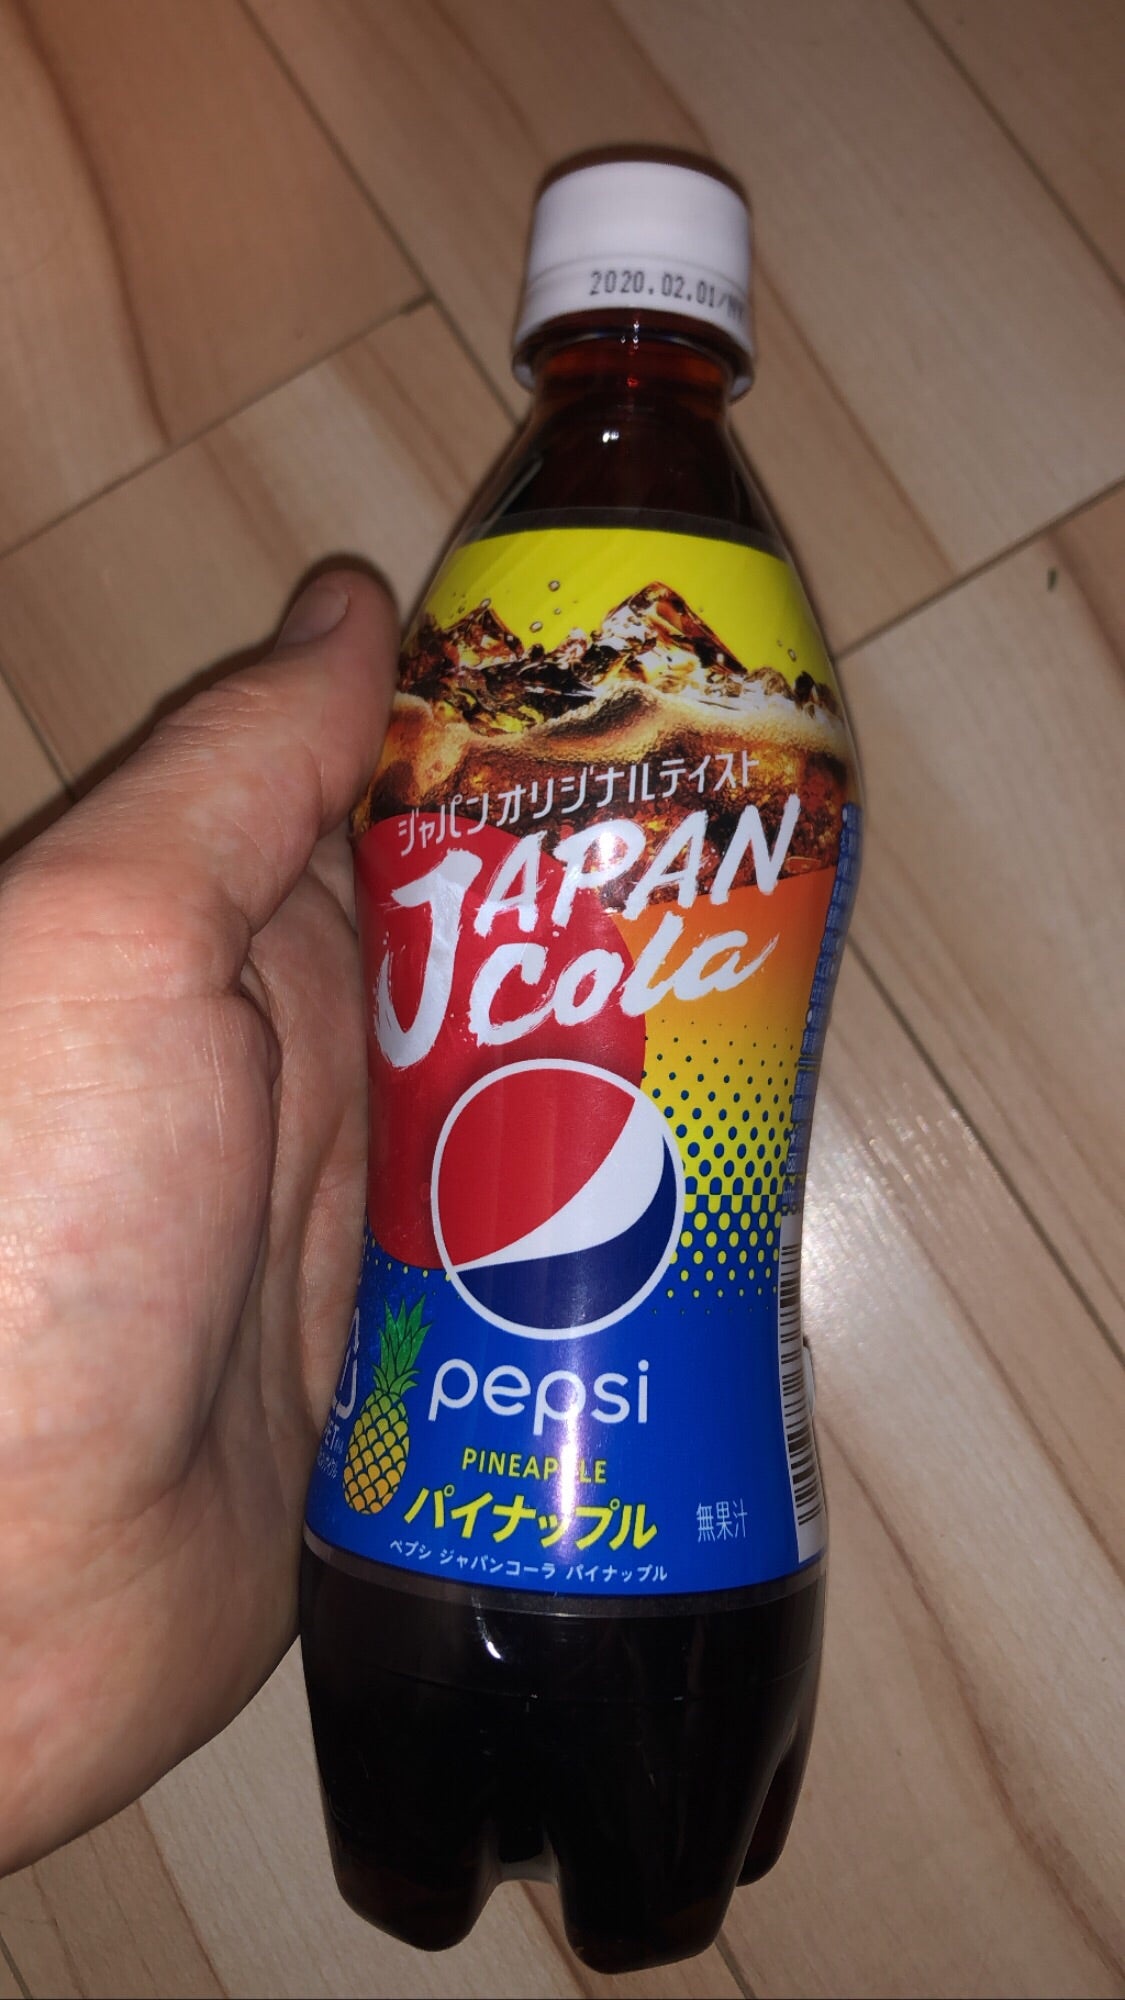 Pepsi Japan Cola Pineapple